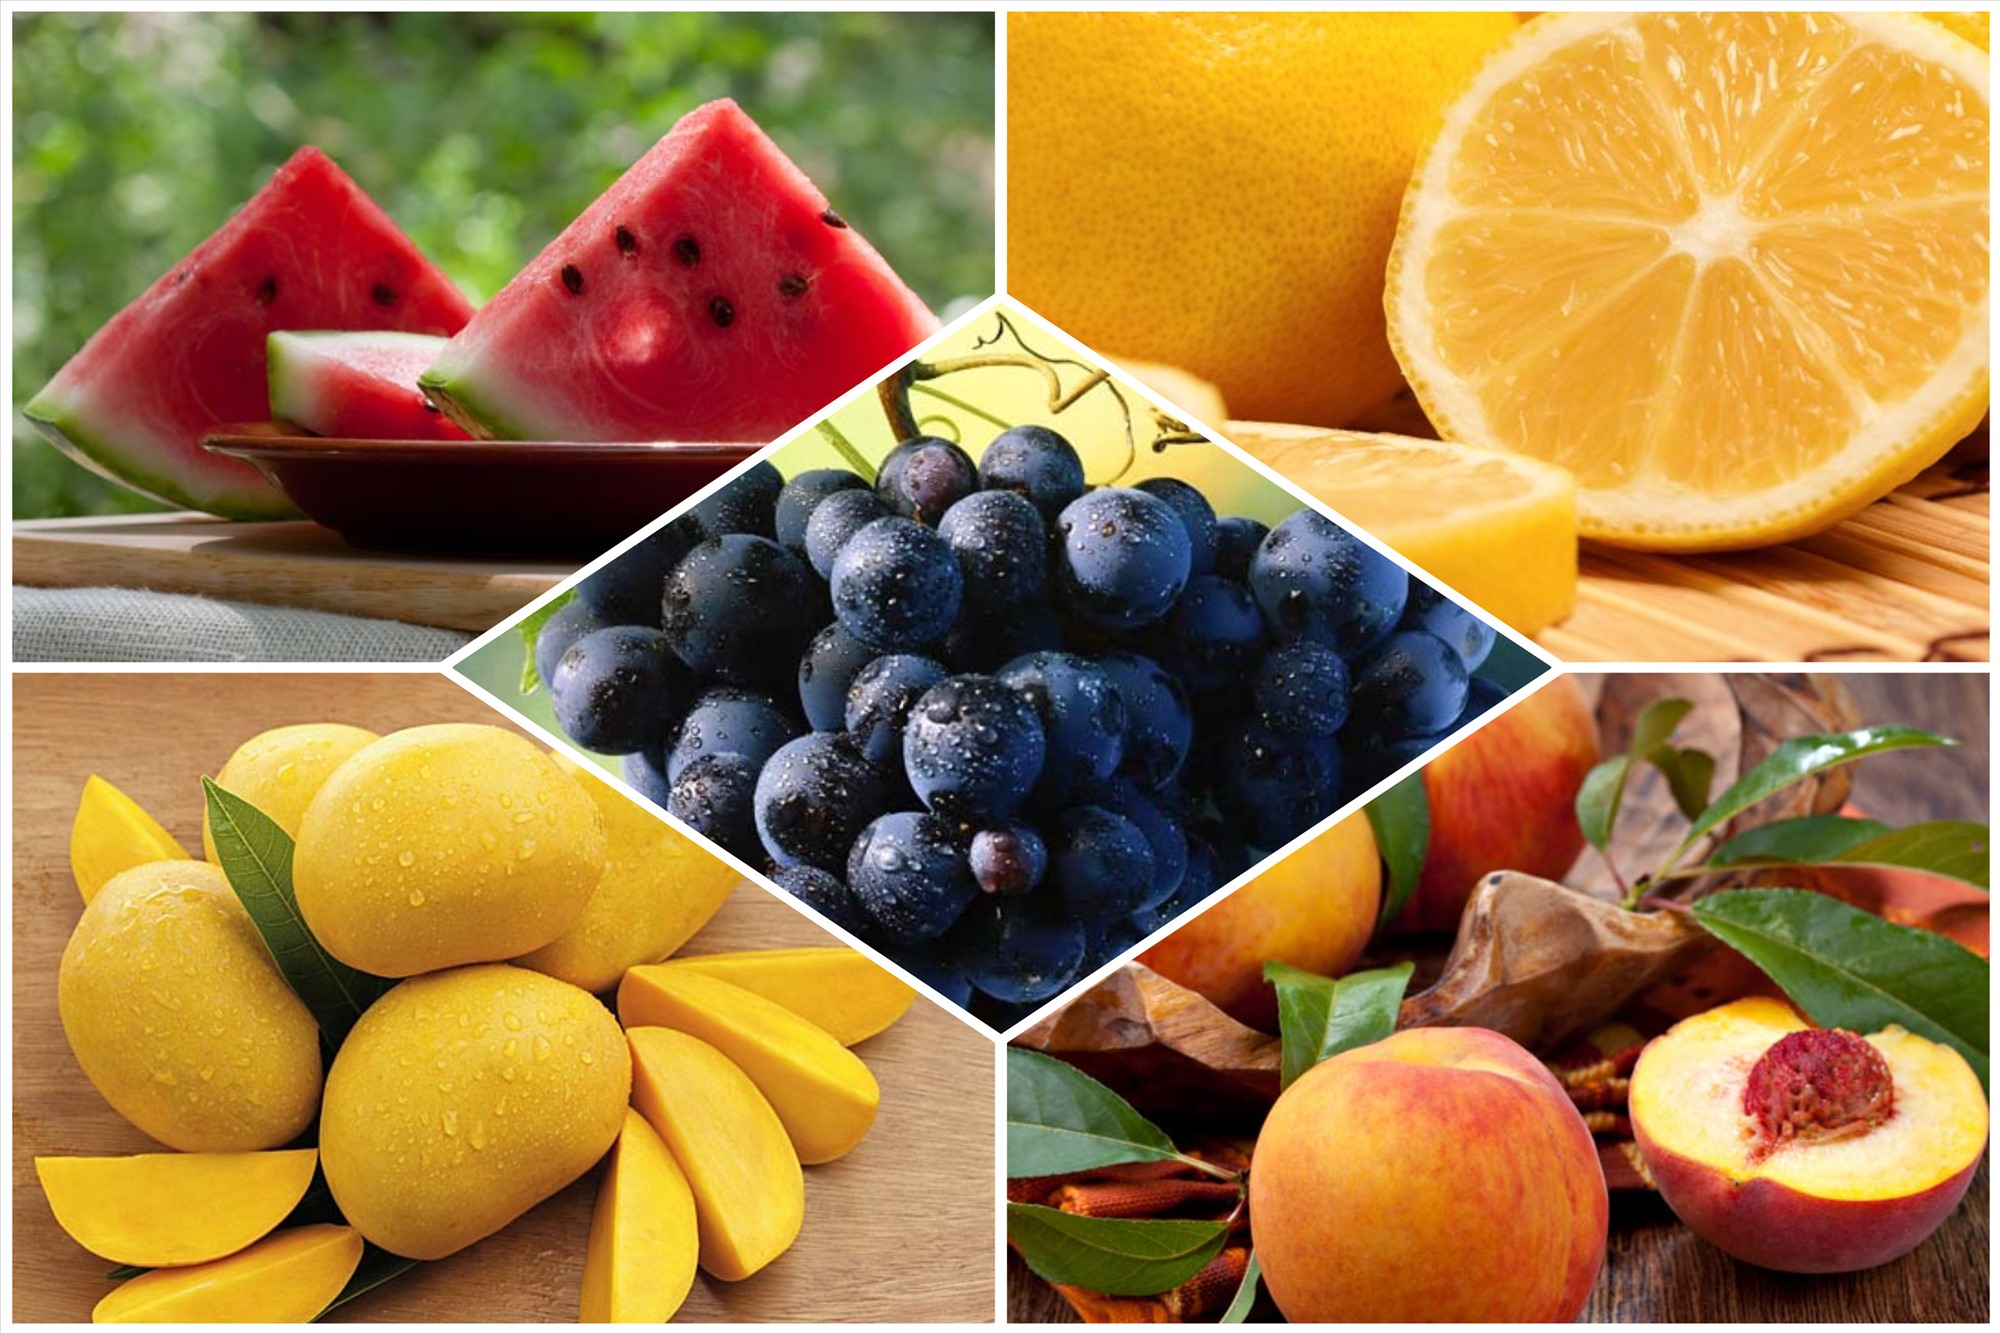 Để có thể giảm cân hiệu quả, bạn nên bổ sung trái cây vào thực đơn hàng ngày. Đồ họa: Bảo Thoa.